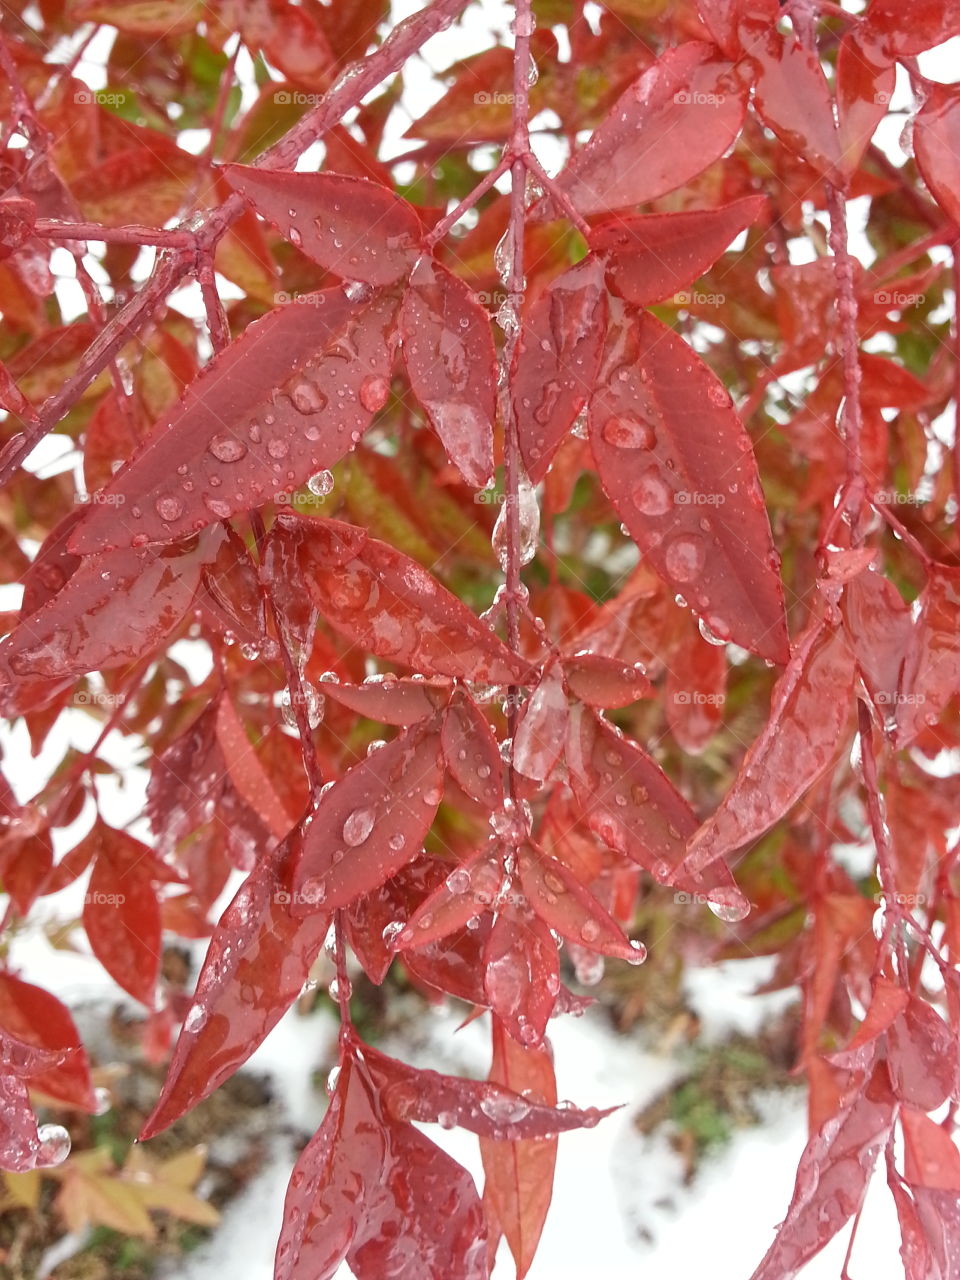 rain drops on red leaves. rain drops on red leaves